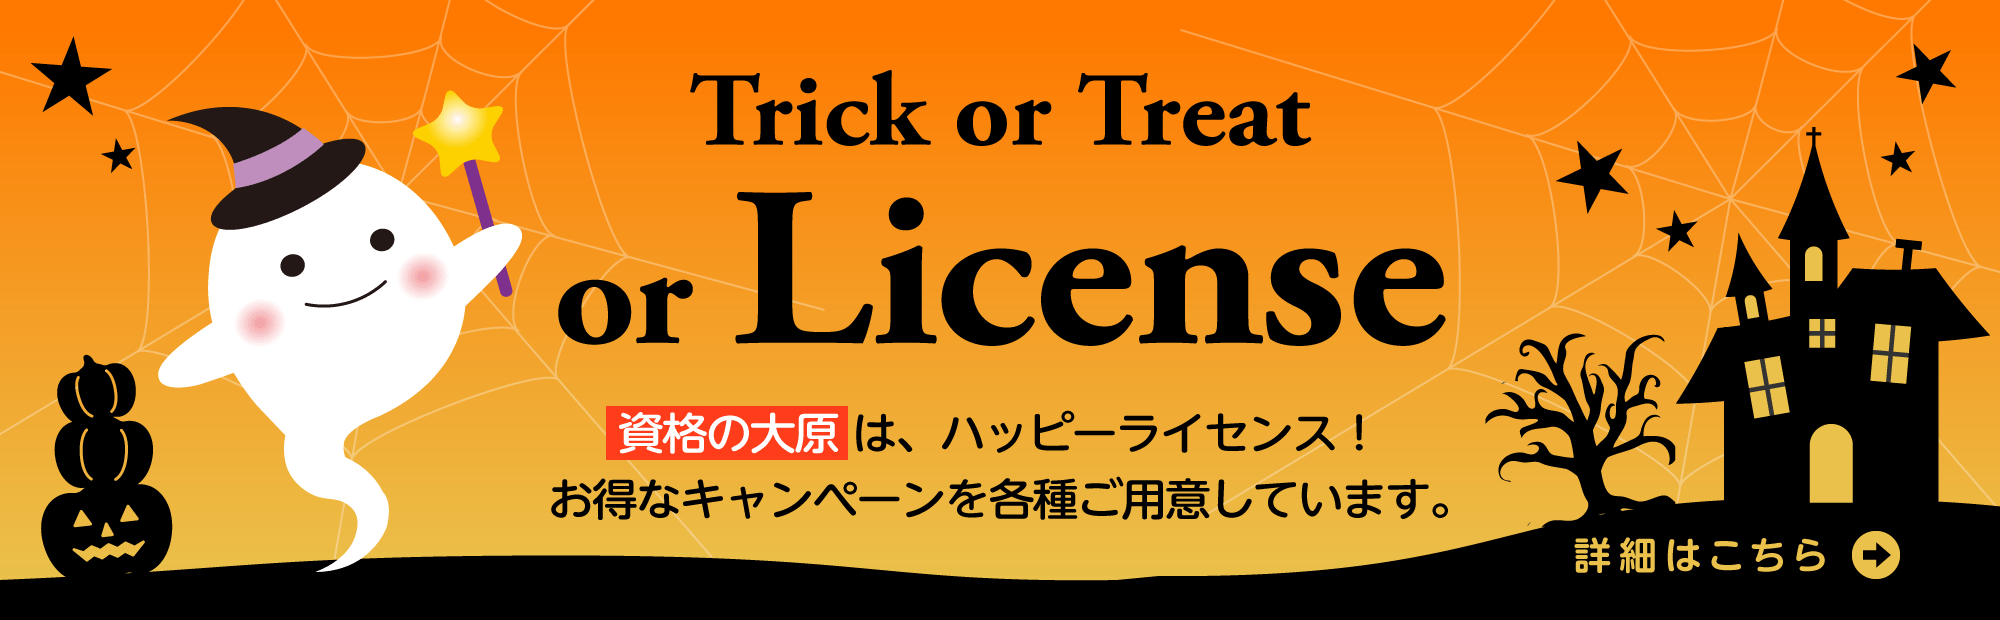 Trick or Treat or Licence　資格の大原は、ハッピーライセンス！お得なキャンペーンを各種ご用意しています。